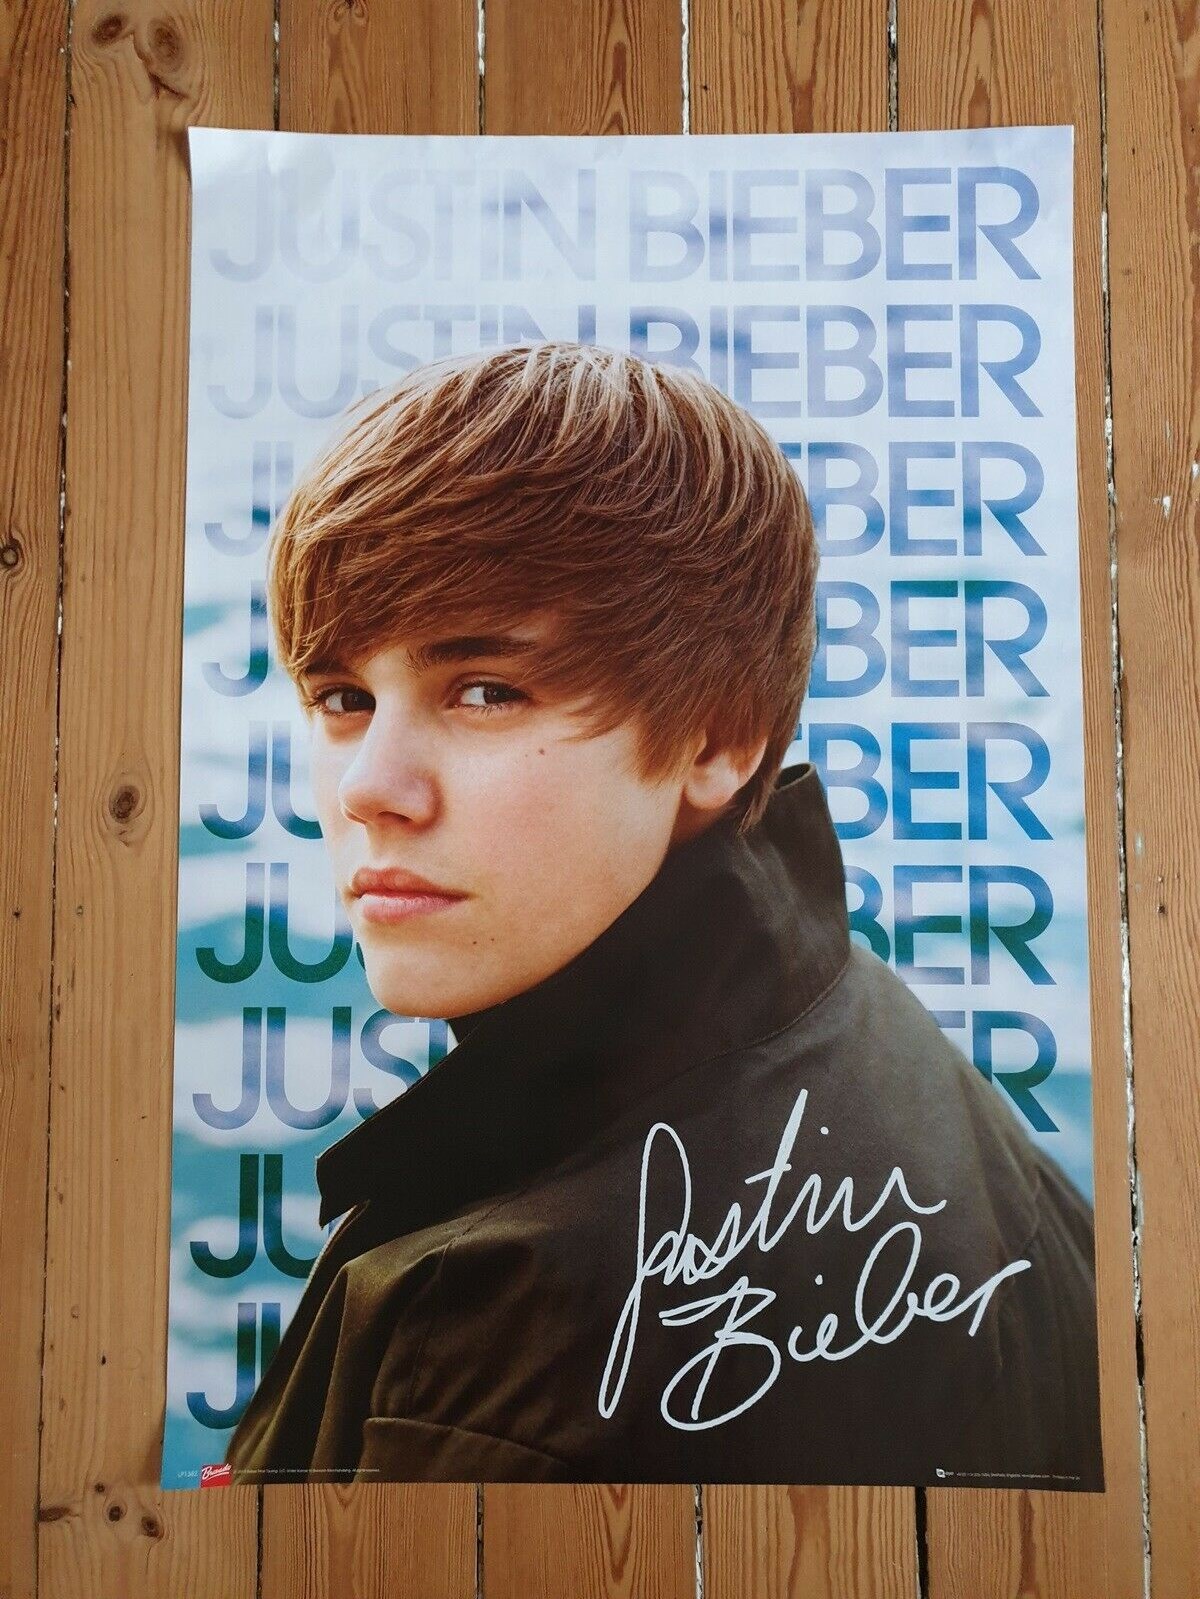 Du skal ikke betale mere end 50 kroner for plakaten med Justin Bieber, som Jesper i København har til salg på DBA